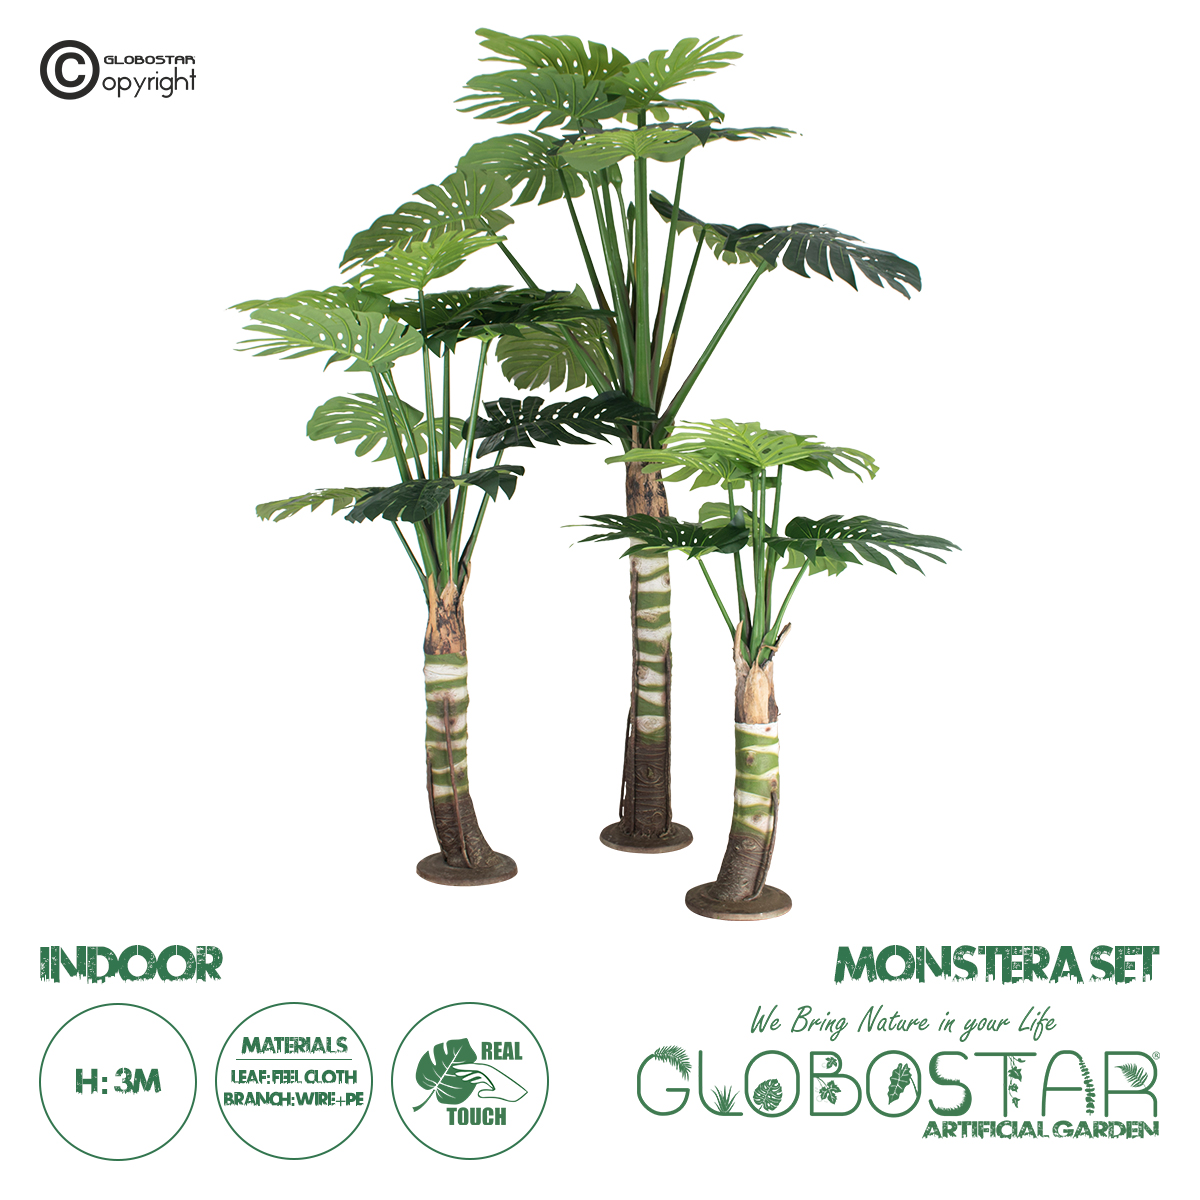 GloboStar® Artificial Garden MONSTERA SET 20090 Τεχνητό Διακοσμητικό Σετ Φυτών Μονστέρα A:Υ300cm B:Υ200cm C:Υ150cm